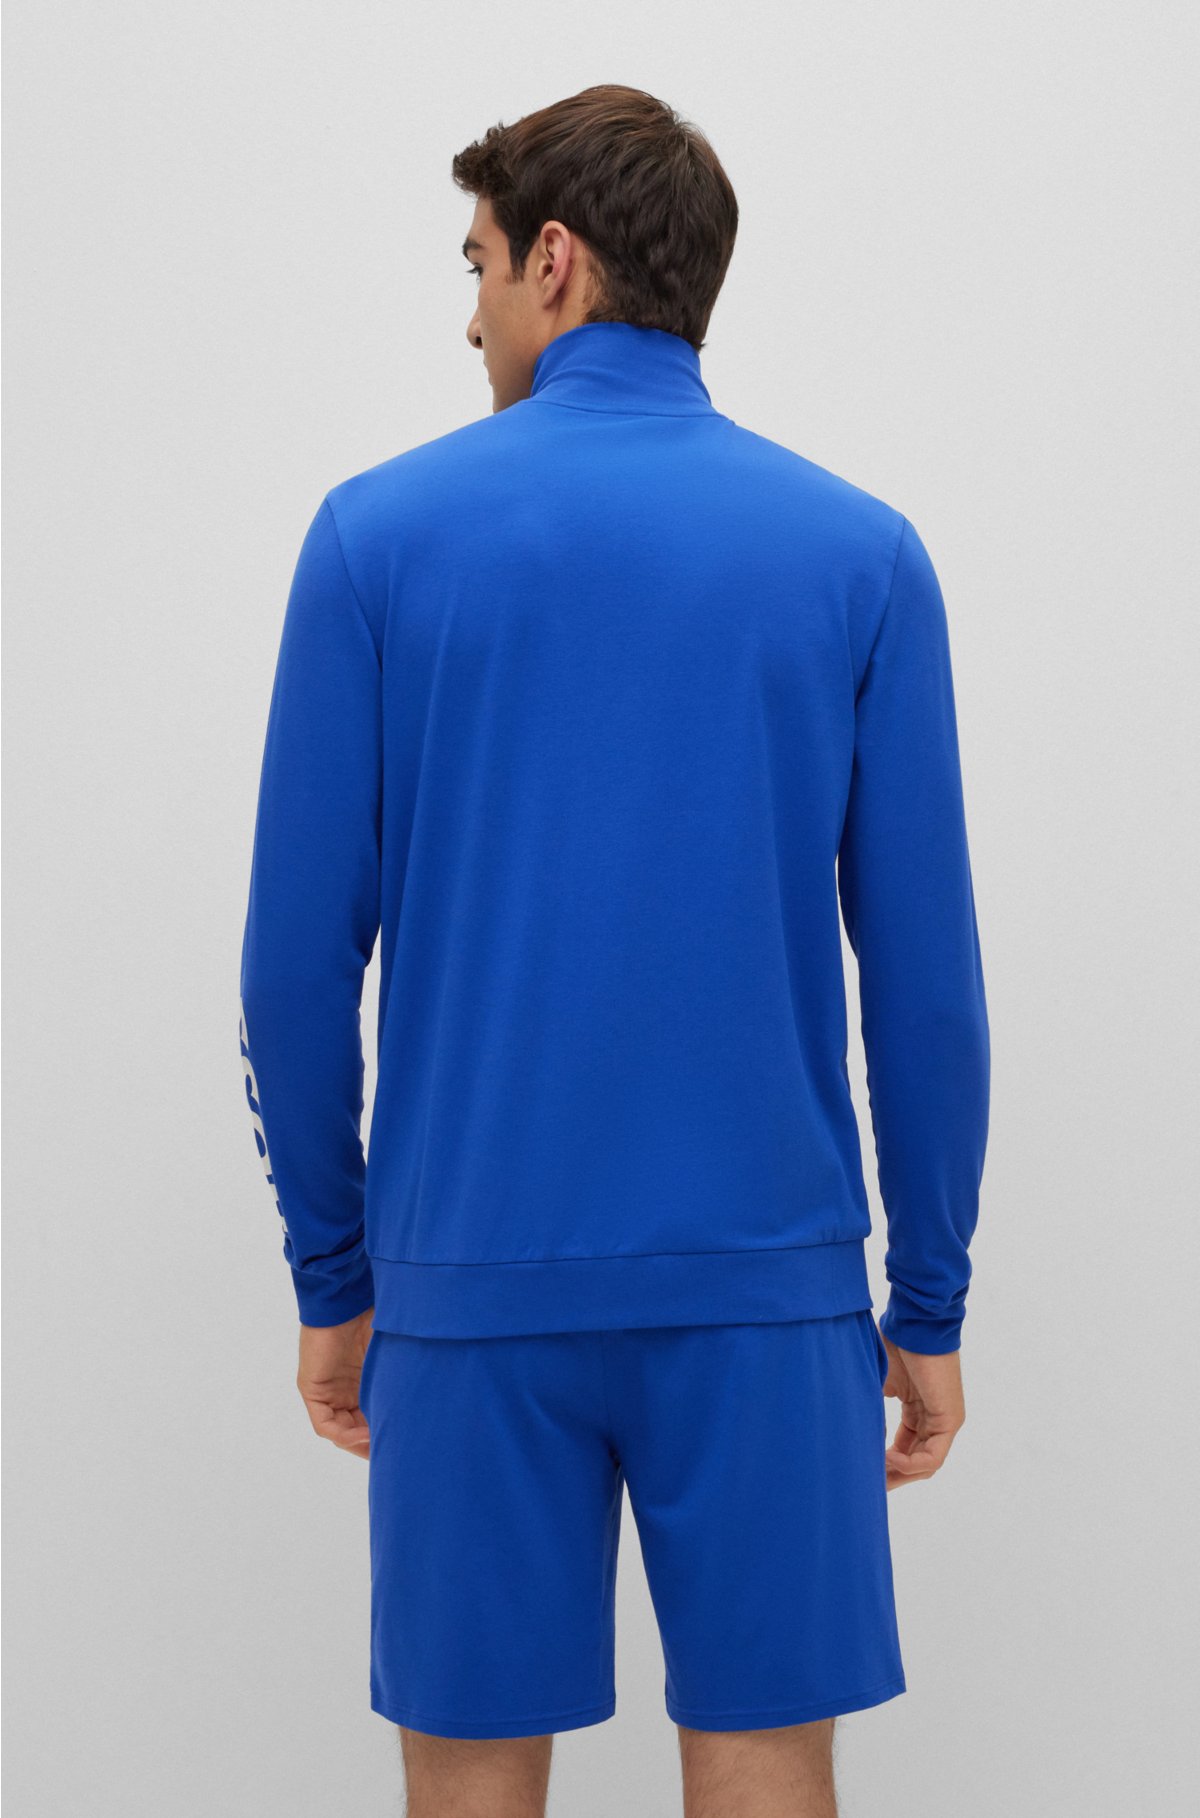 Stretch-cotton logos - with contrast pajamas BOSS